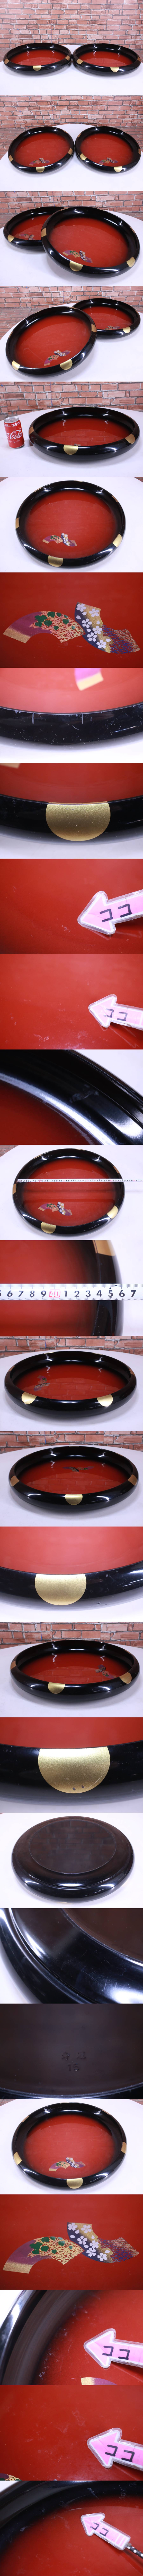 寿司桶2個セット寿冠15 中古現状品飲食店使用中古品寿冠寿司桶使用感